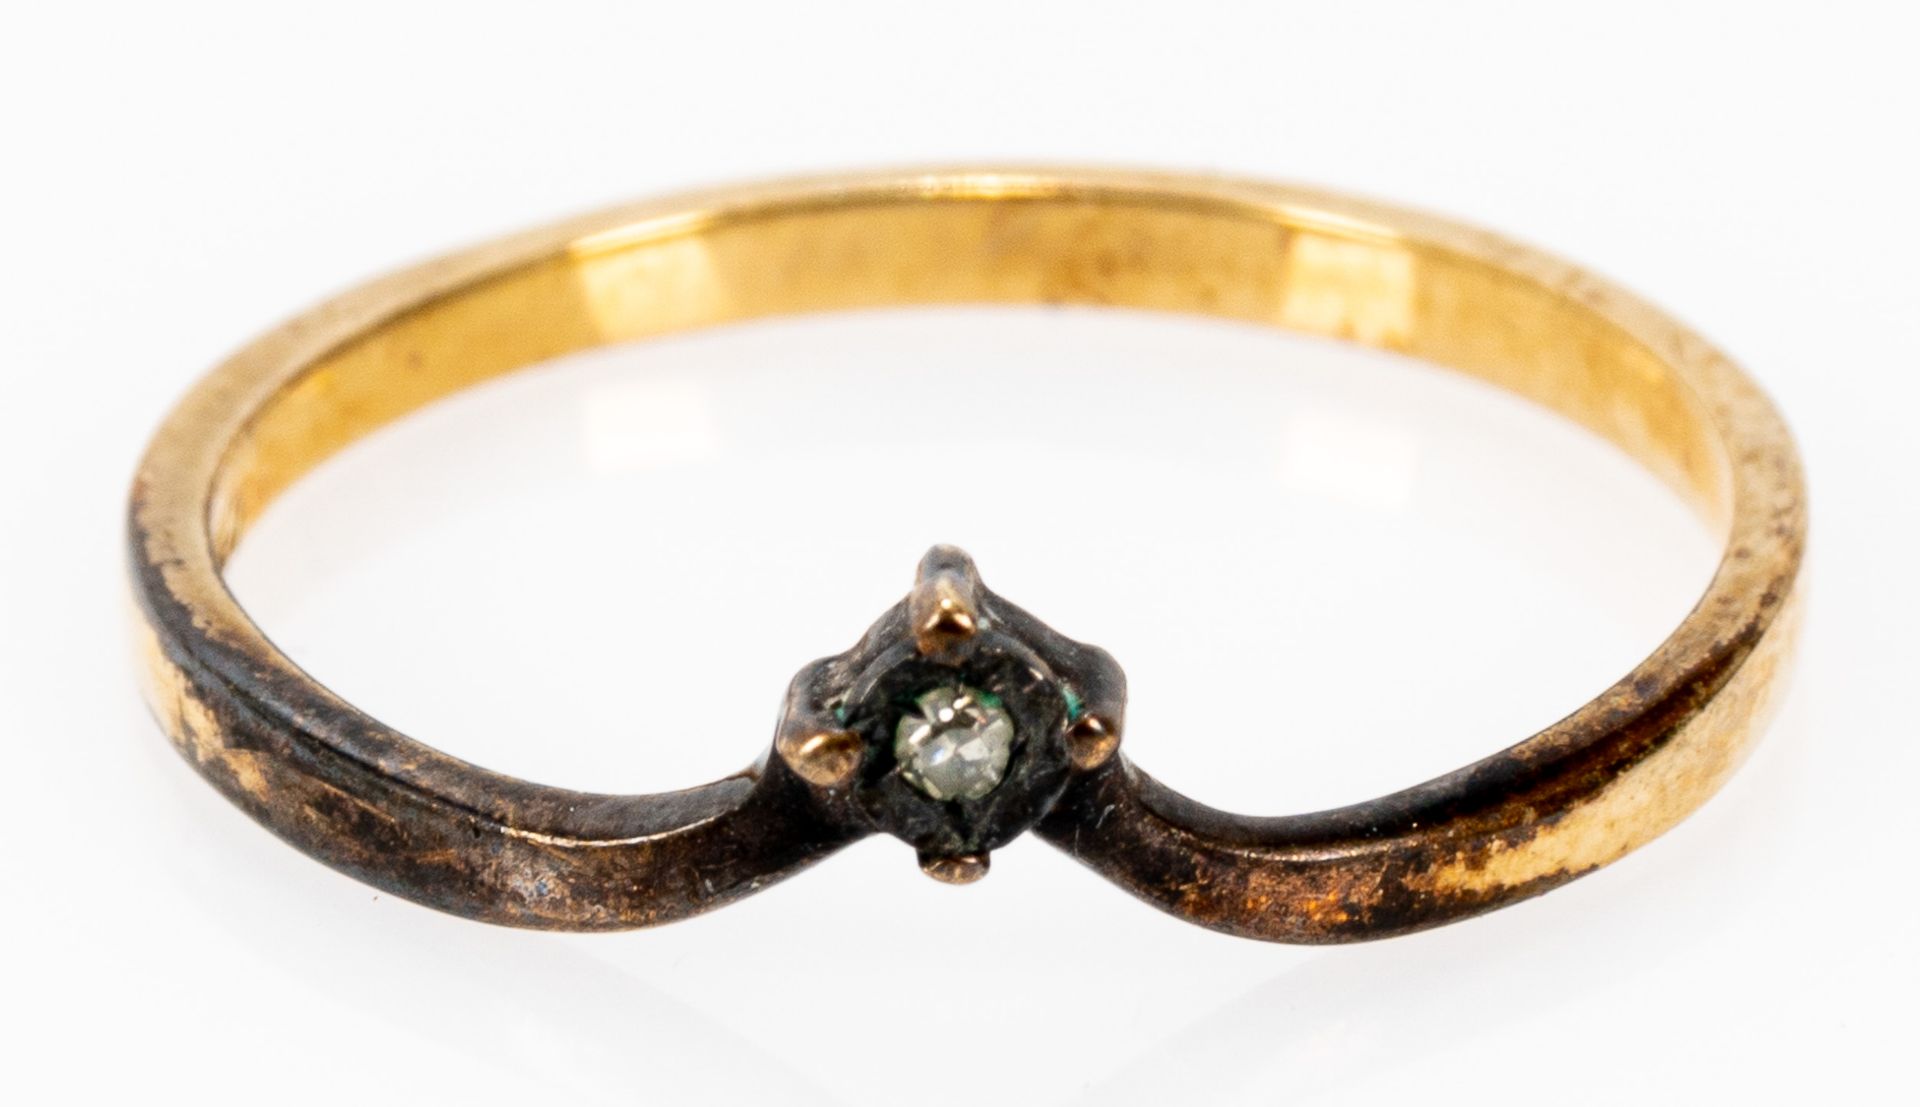 Zarter 375er Gelbgold Ring in nicht alltäglicher Formgebung, mit kleinen Diamanten besetzt; Ringinn